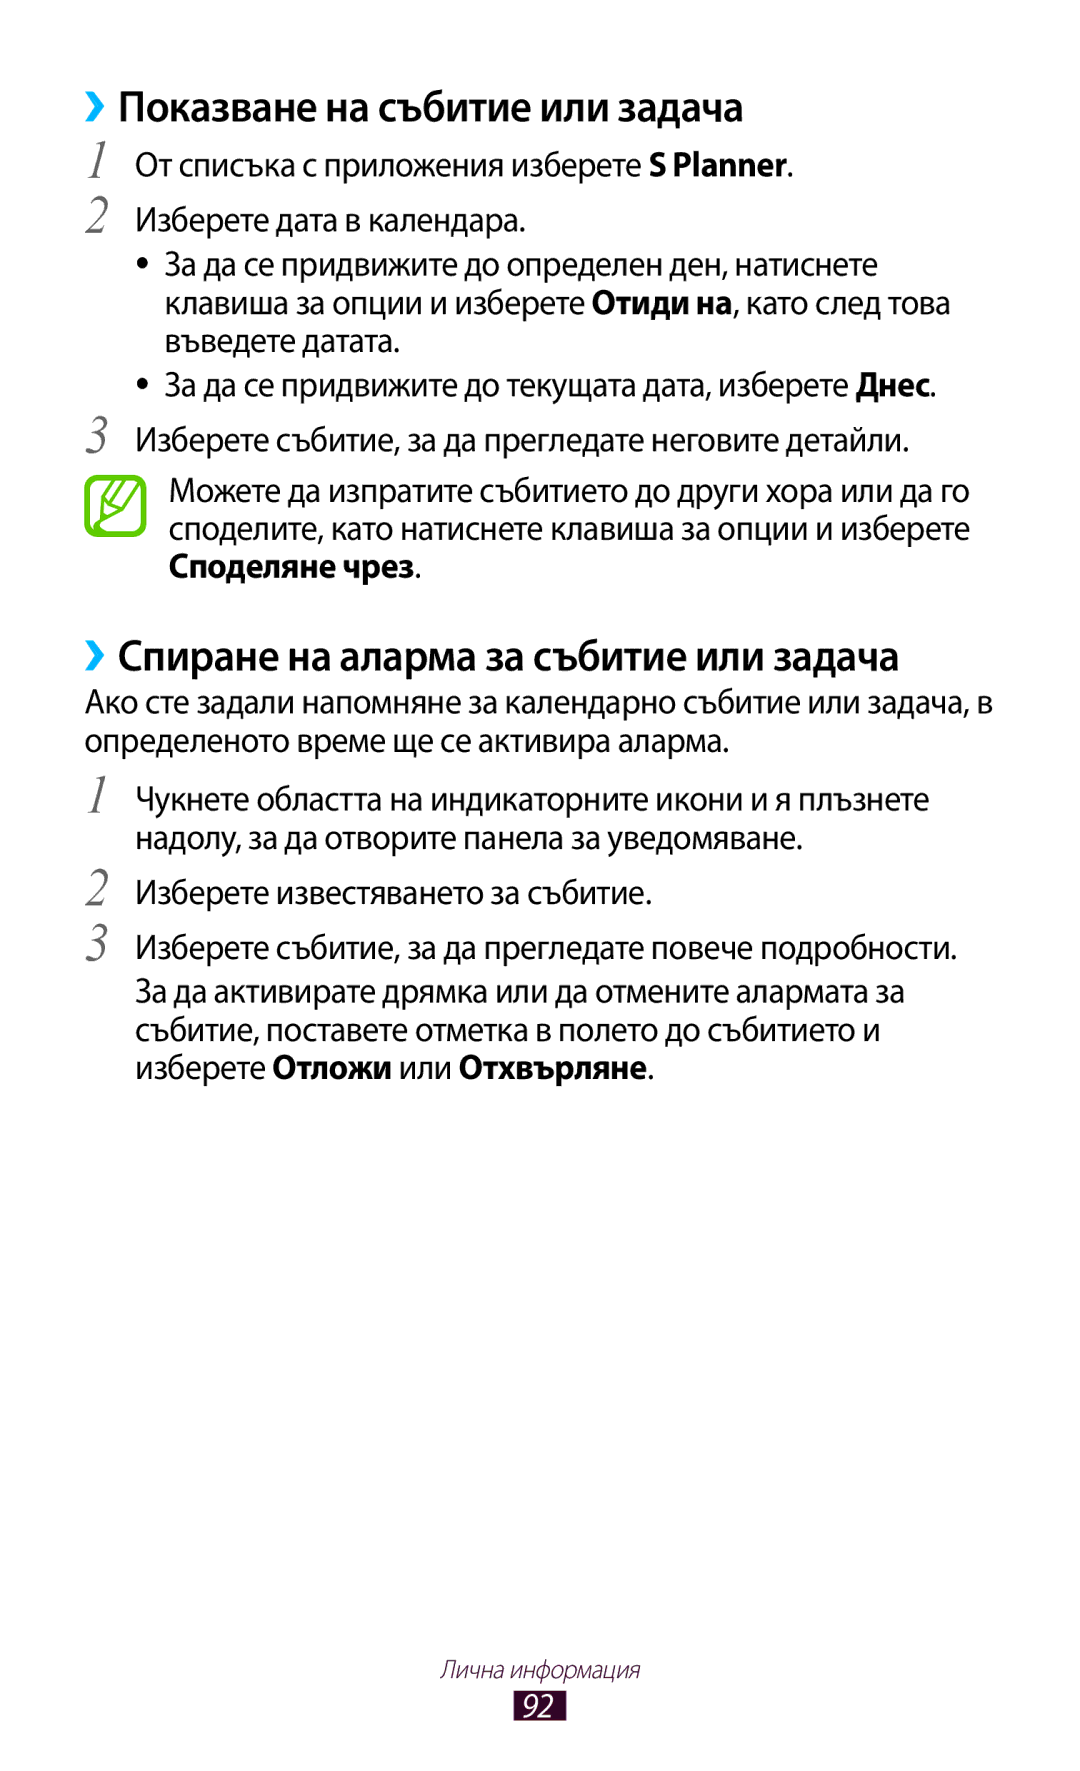 Samsung GT-S7562ZKABGL, GT-S7562UWAVVT manual ››Показване на събитие или задача, ››Спиране на аларма за събитие или задача 